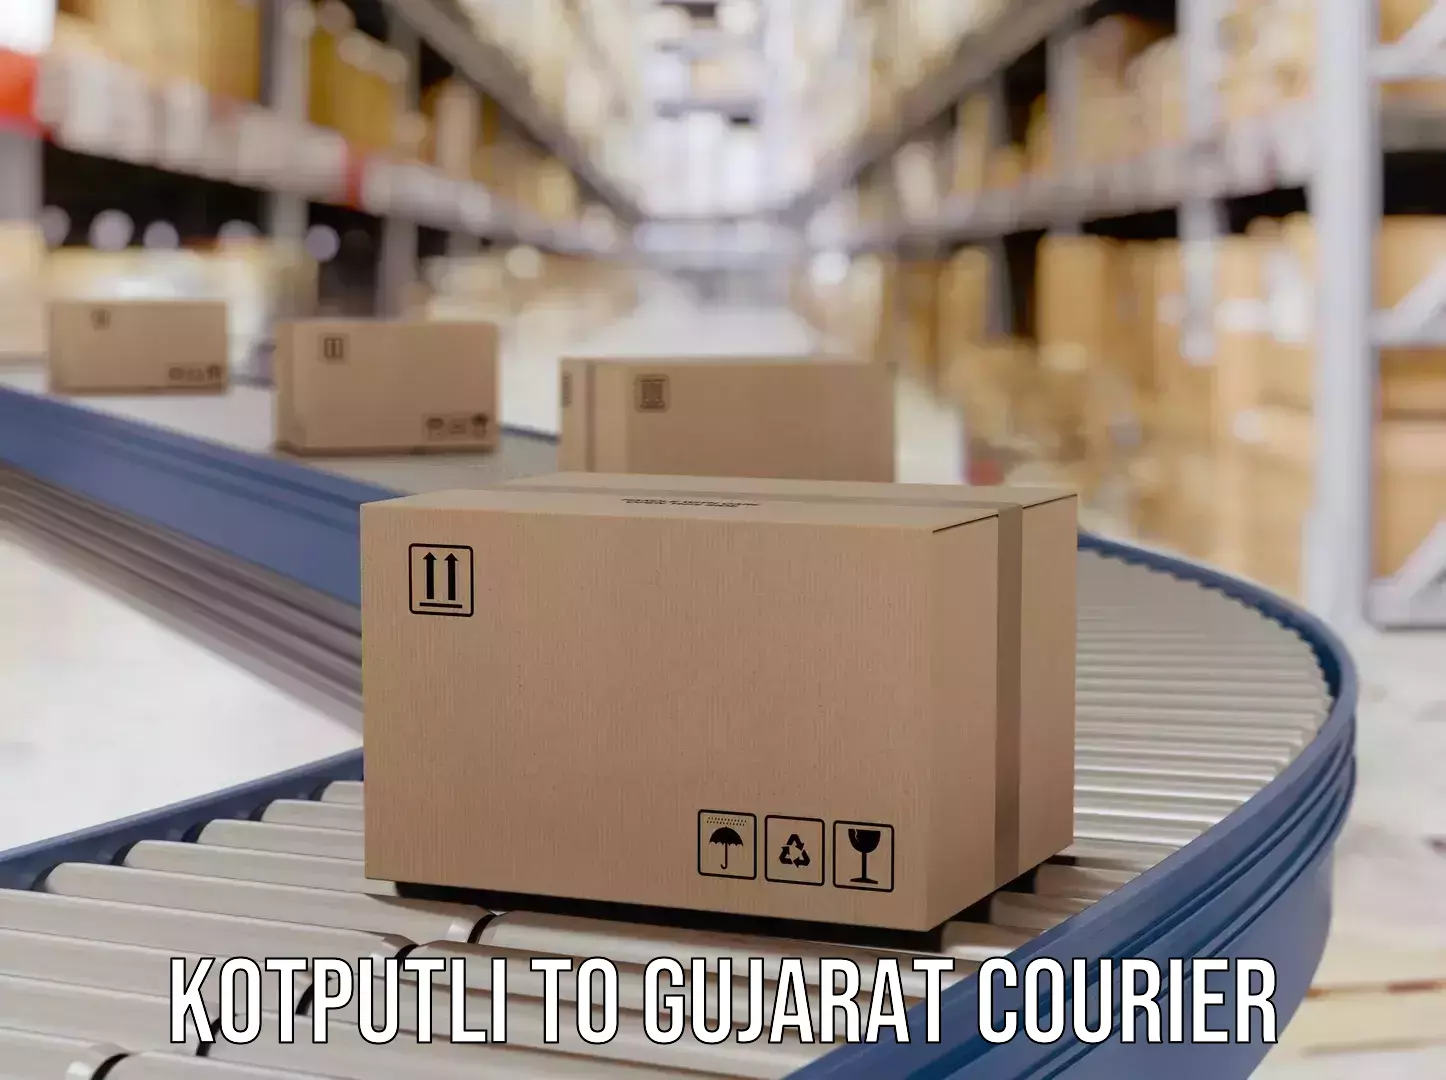 Affordable parcel service Kotputli to Gujarat